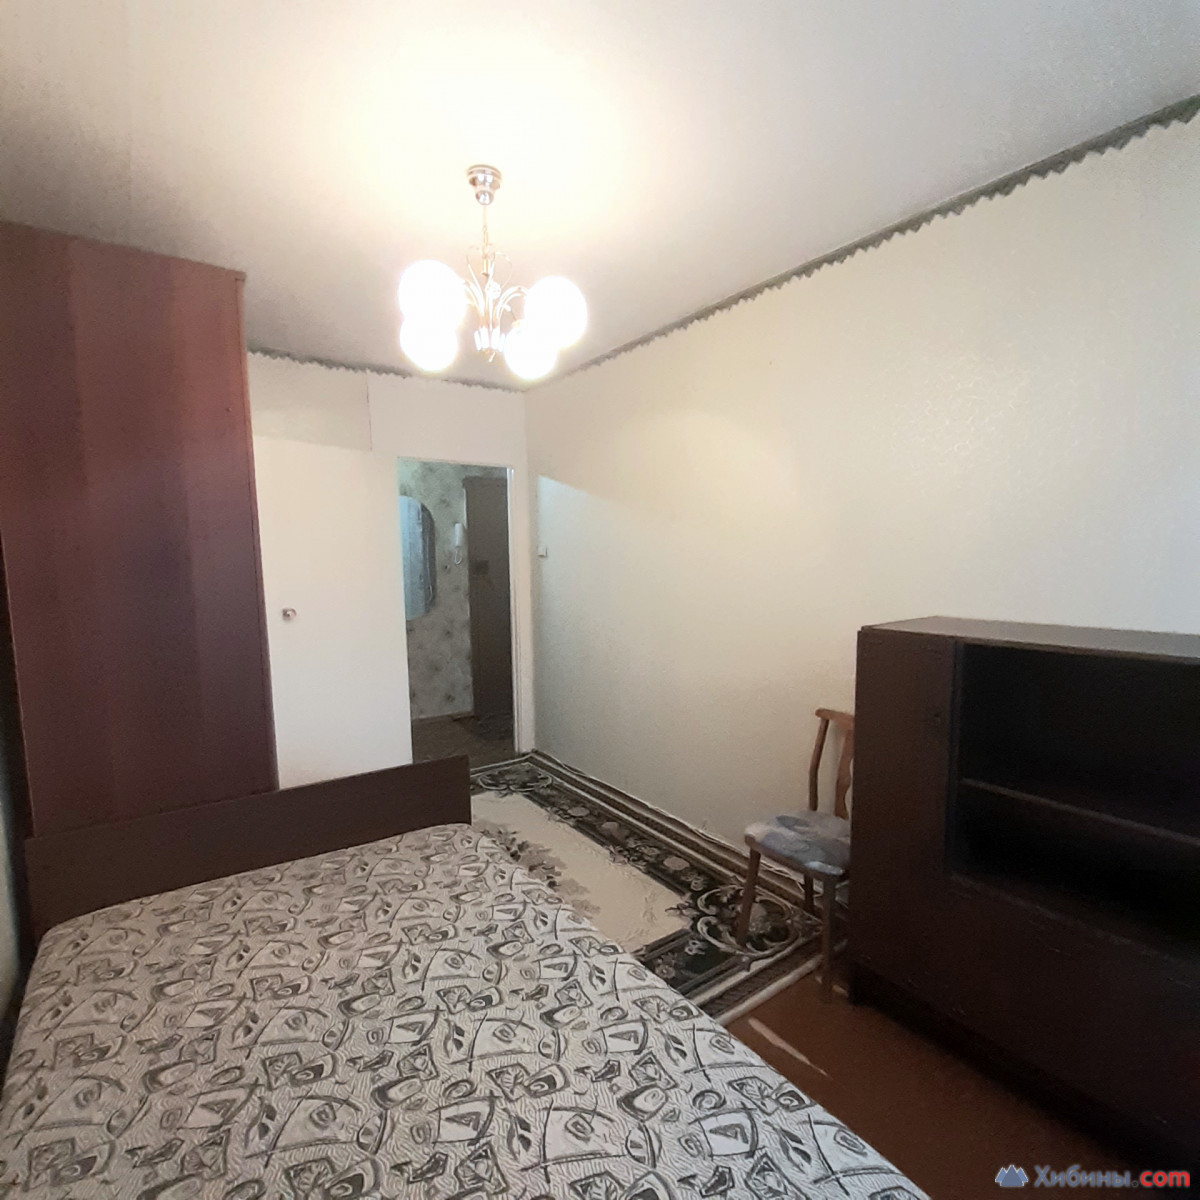 Продам 2-комнатную квартиру комнаты раздельные